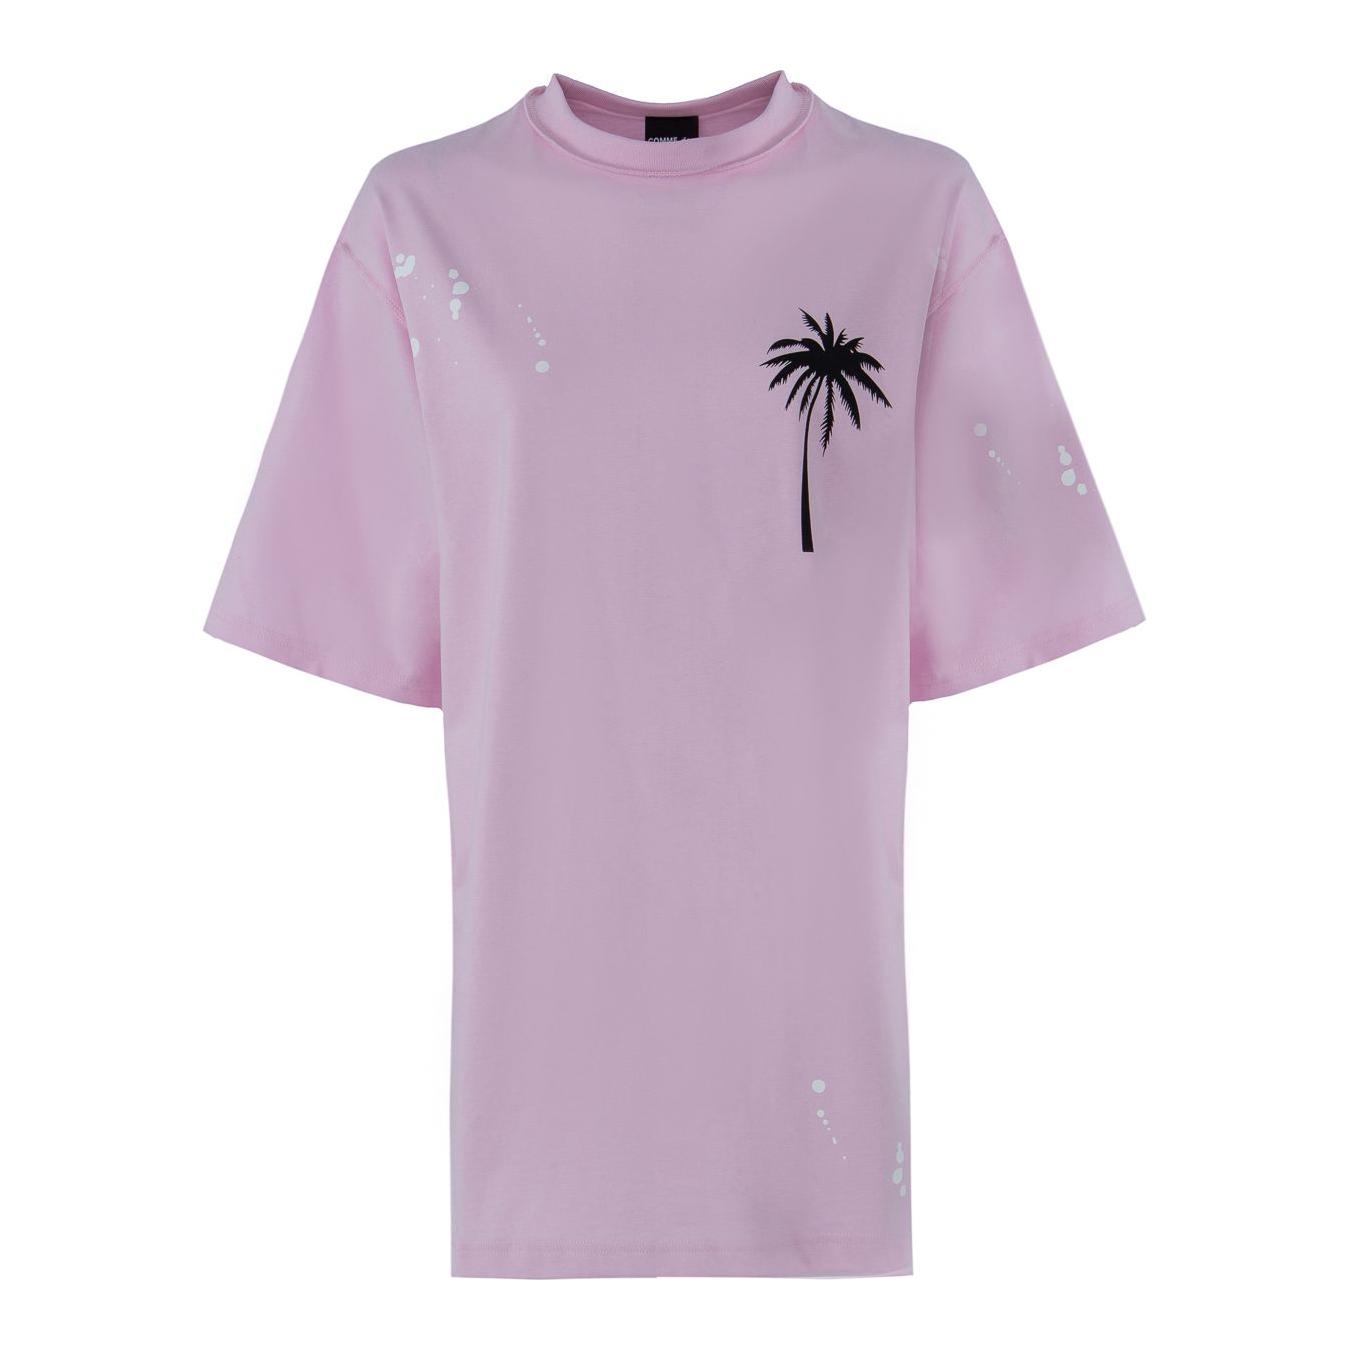 Comme Des Fuckdown | Chic Pink Cotton T-Shirt Dress with Unique Print| McRichard Designer Brands   